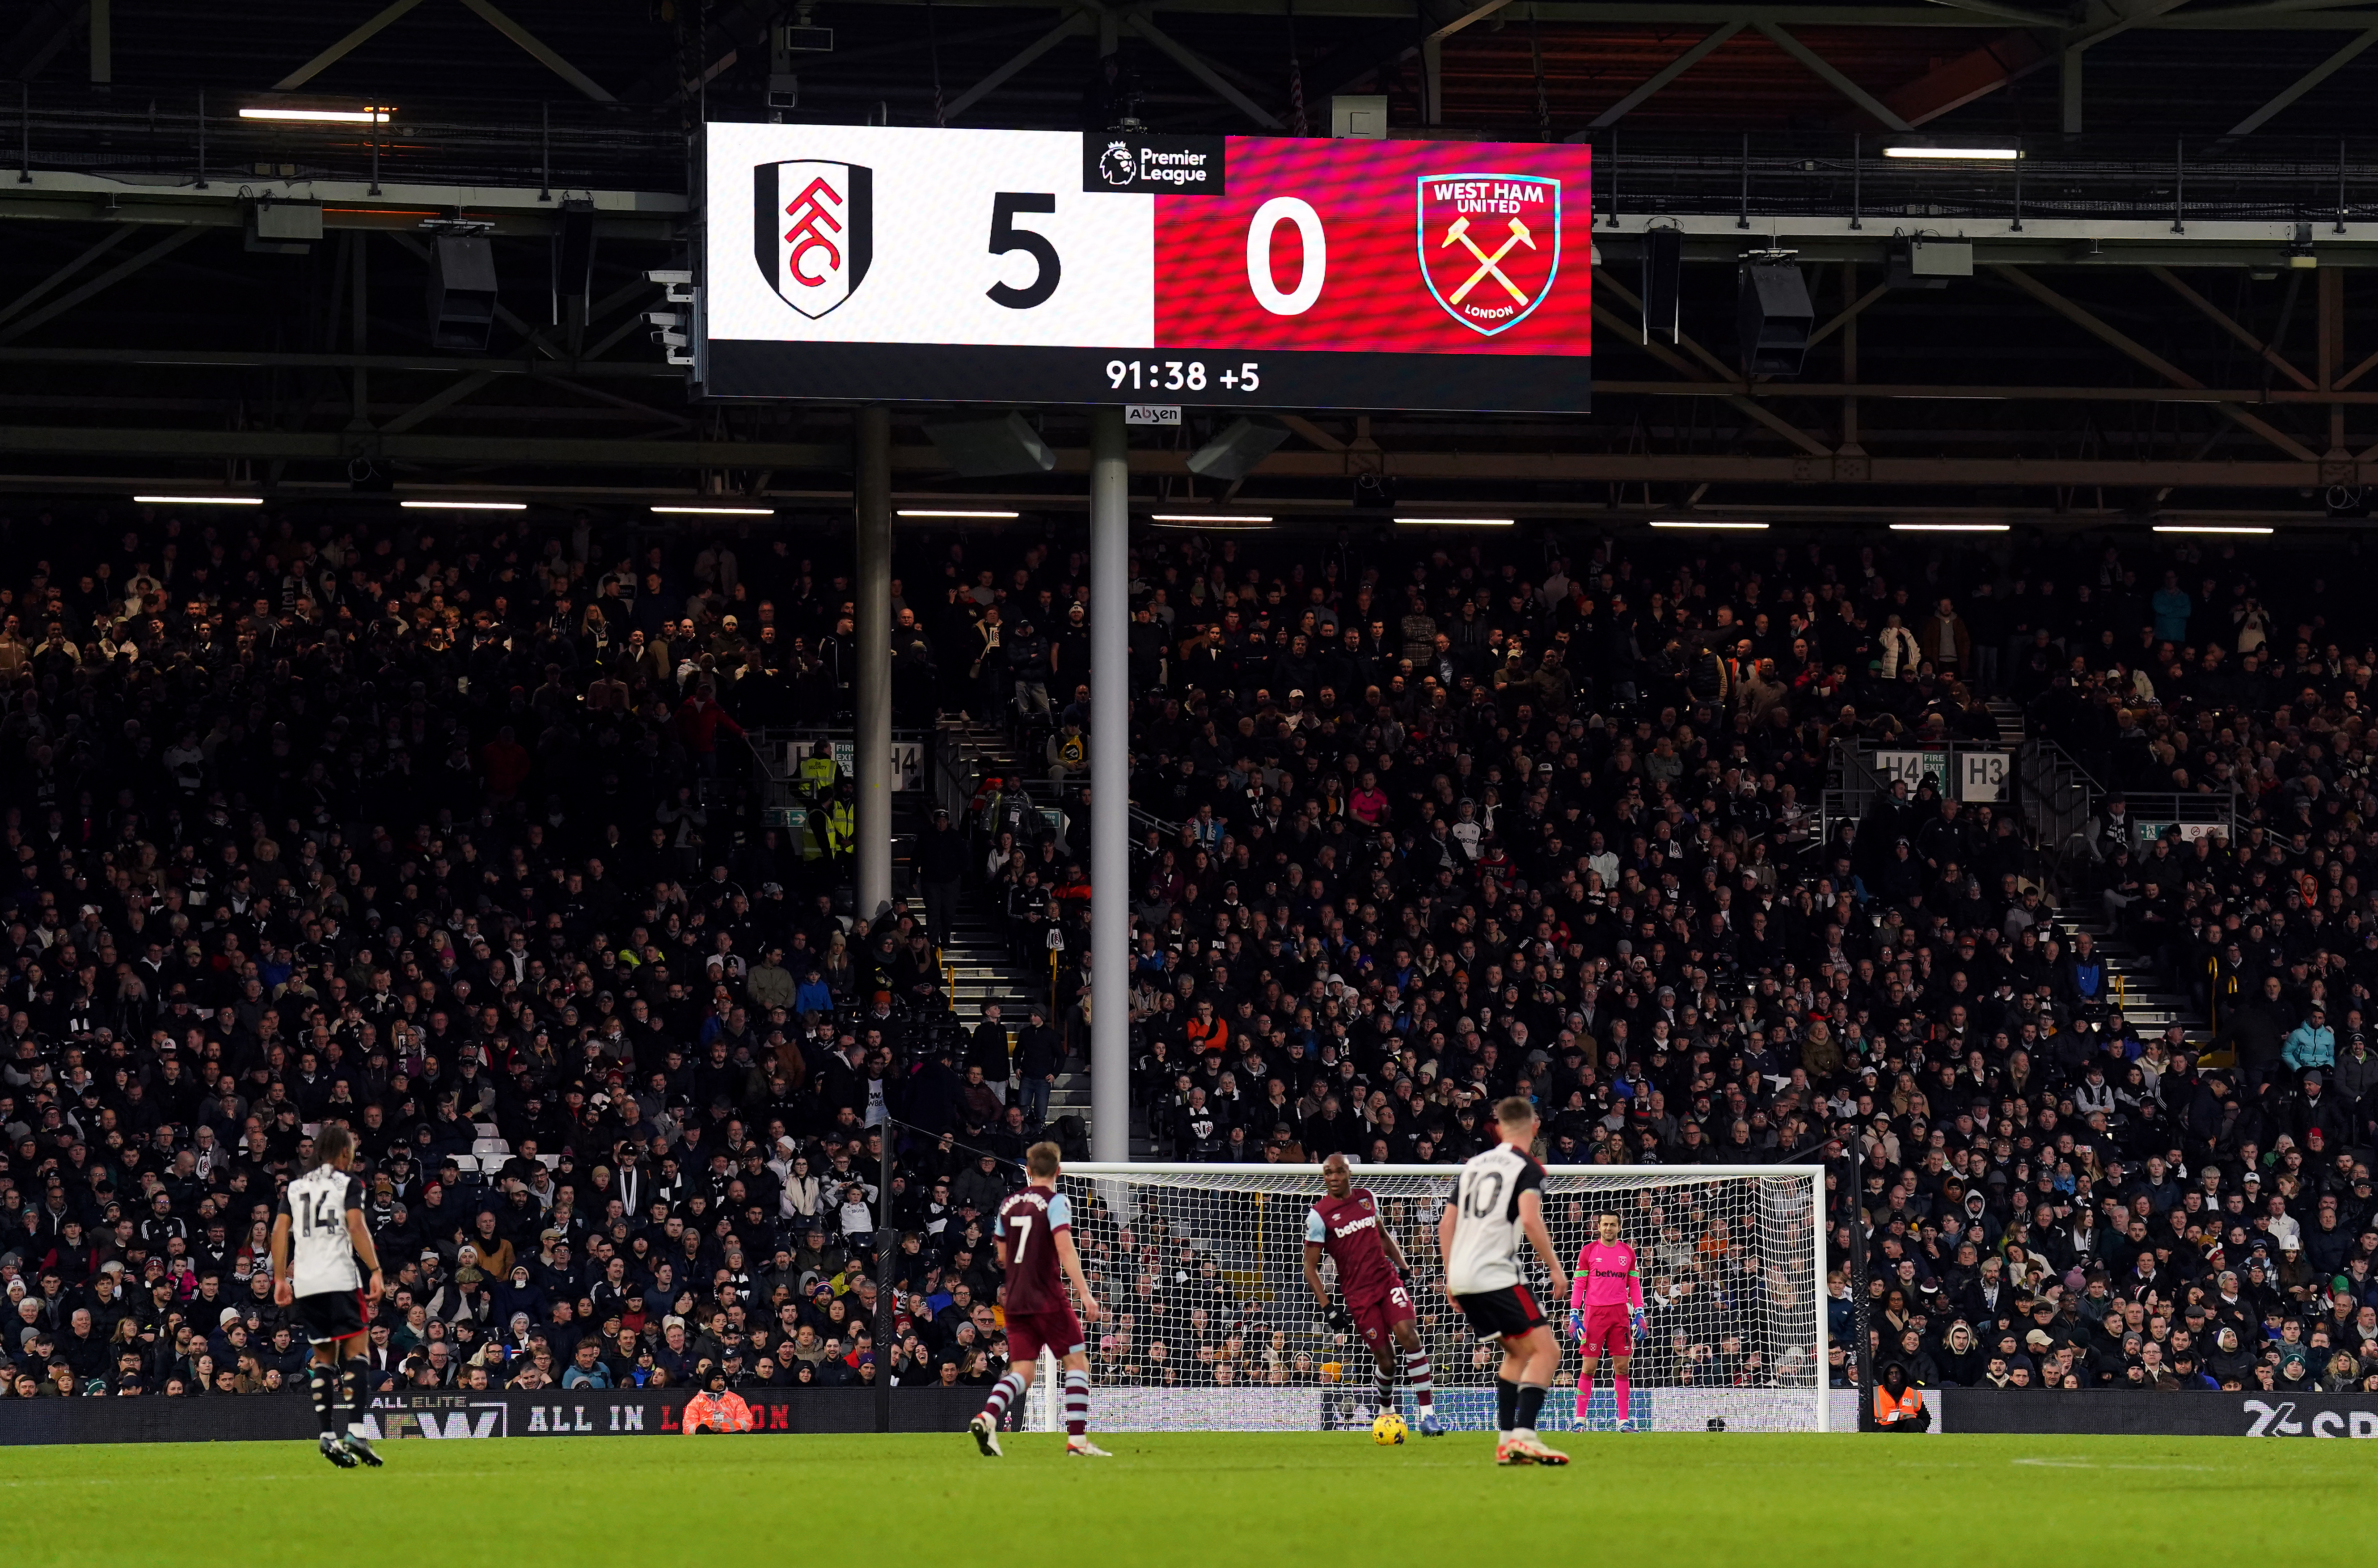 West Ham were demolished 5-0 at Fulham on Sunday